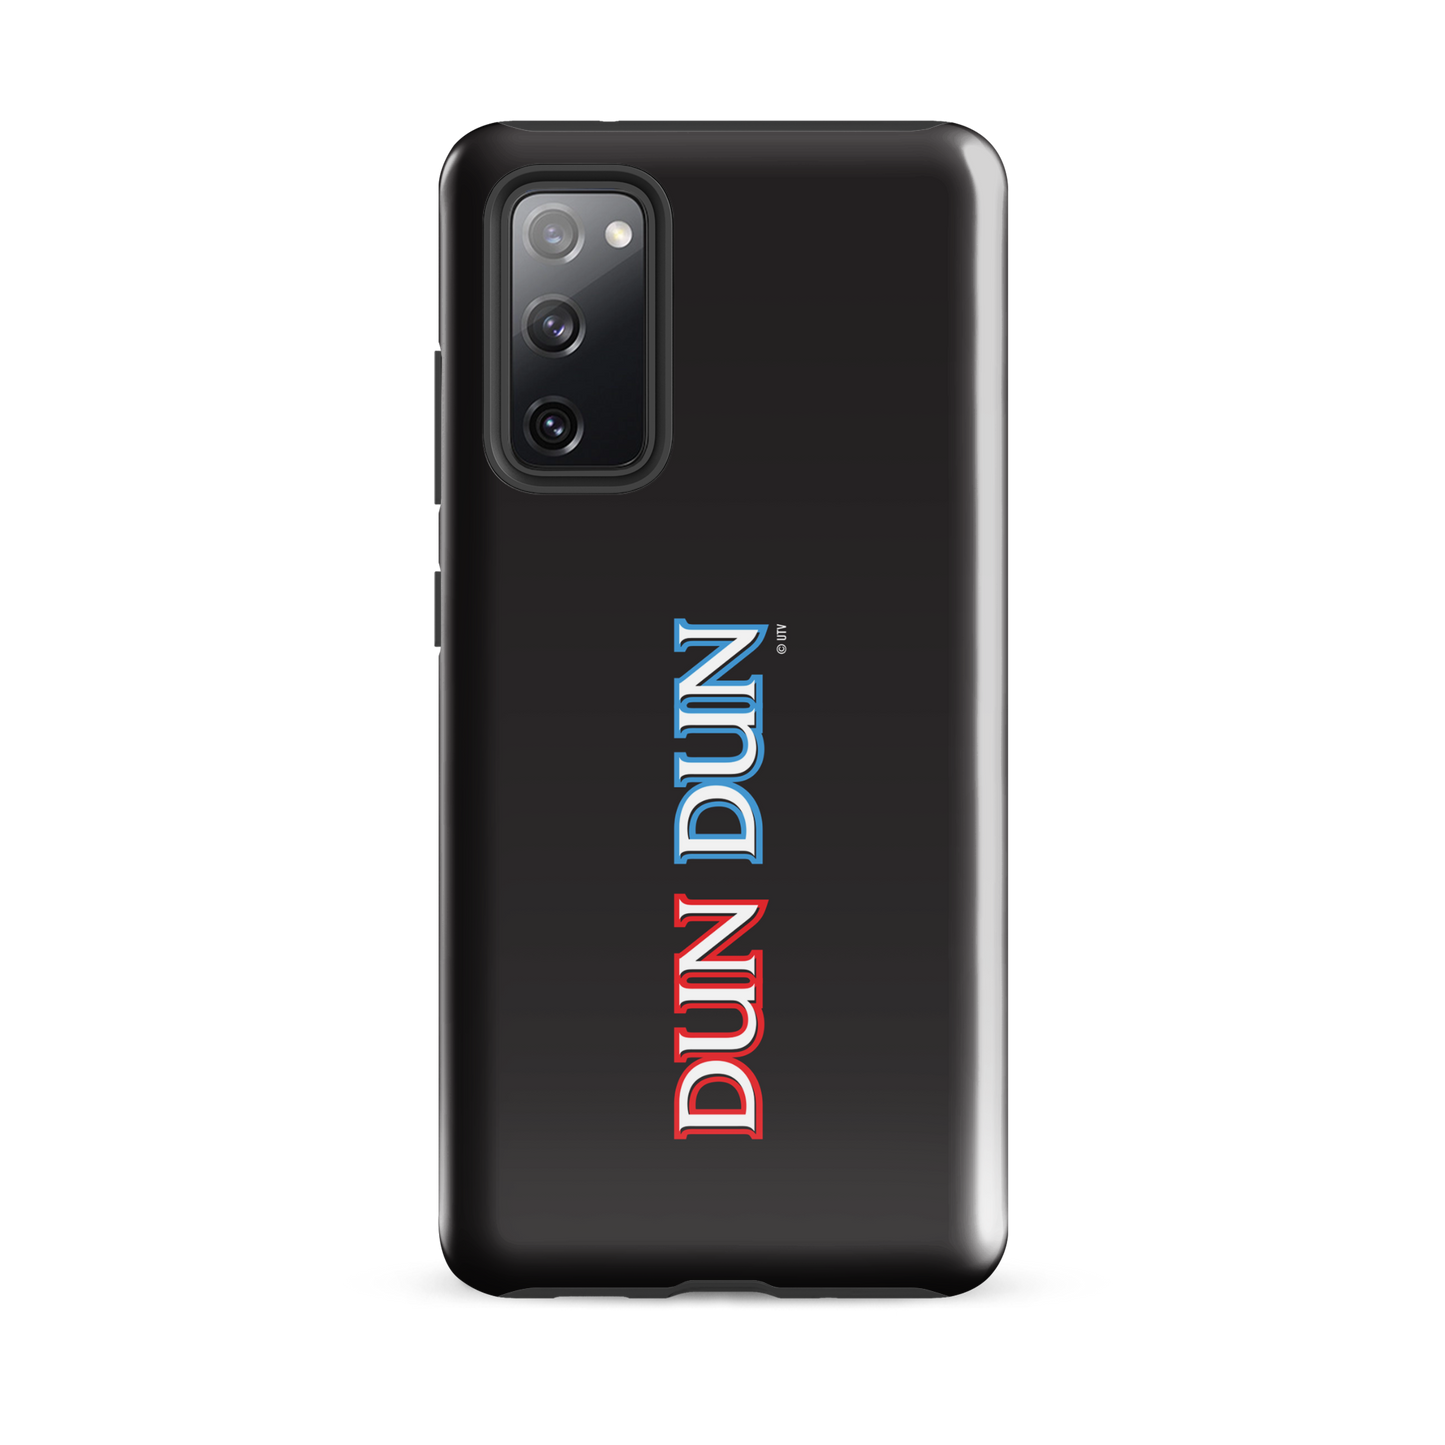 Law & Order: SVU Dun Dun Tough Phone Case - Samsung